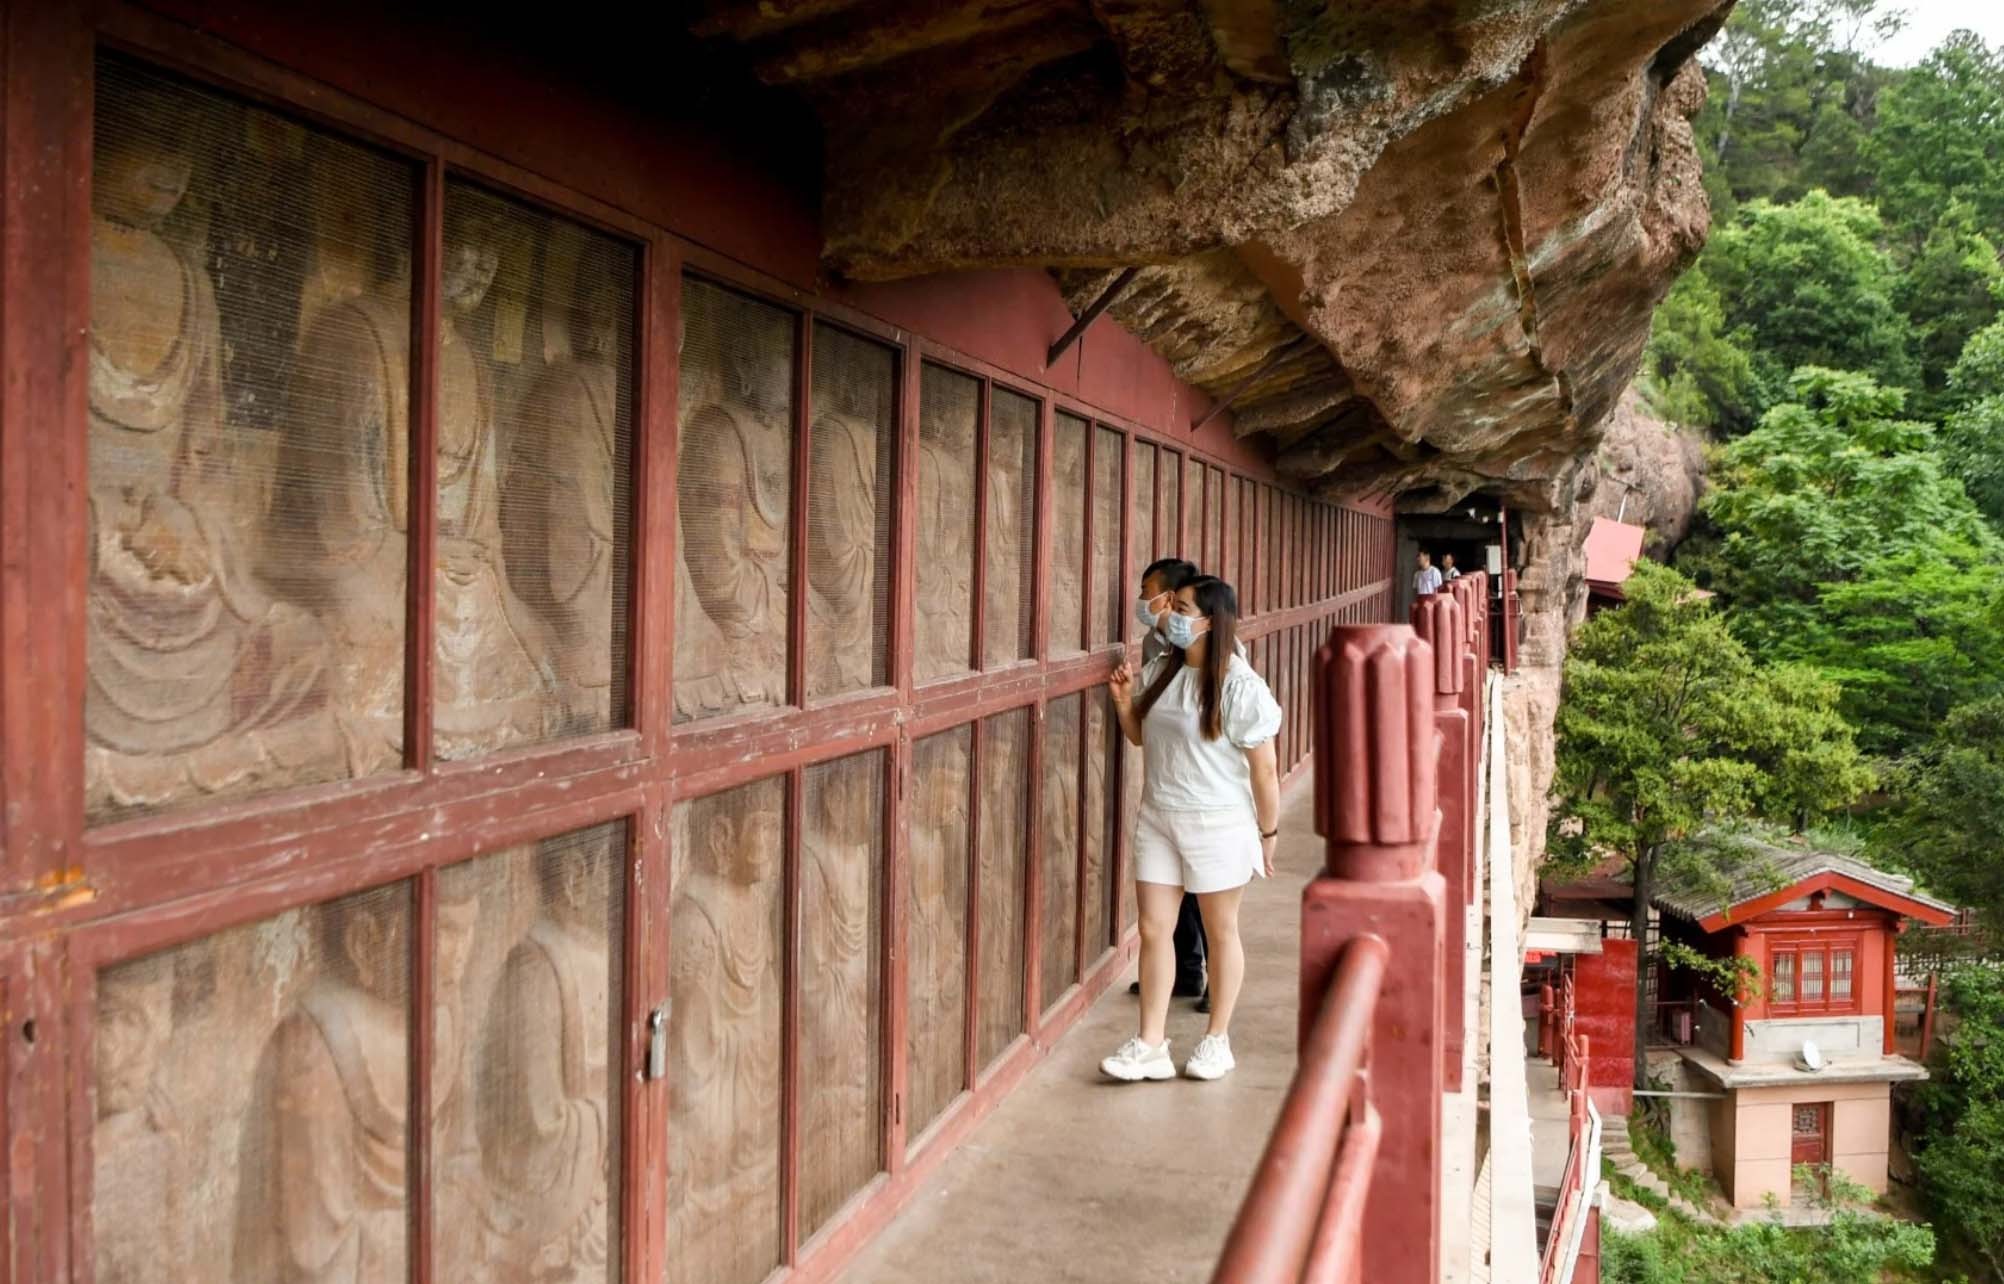 Mặc dù việc tiếp cận không dễ dàng, song hang Mạch Tích Sơn được bảo tồn tốt. Ngày nay, du khách có thể chiêm ngưỡng các tác phẩm điêu khắc và tranh tường Đức Phật trên một con đường hẹp dọc vách đá.